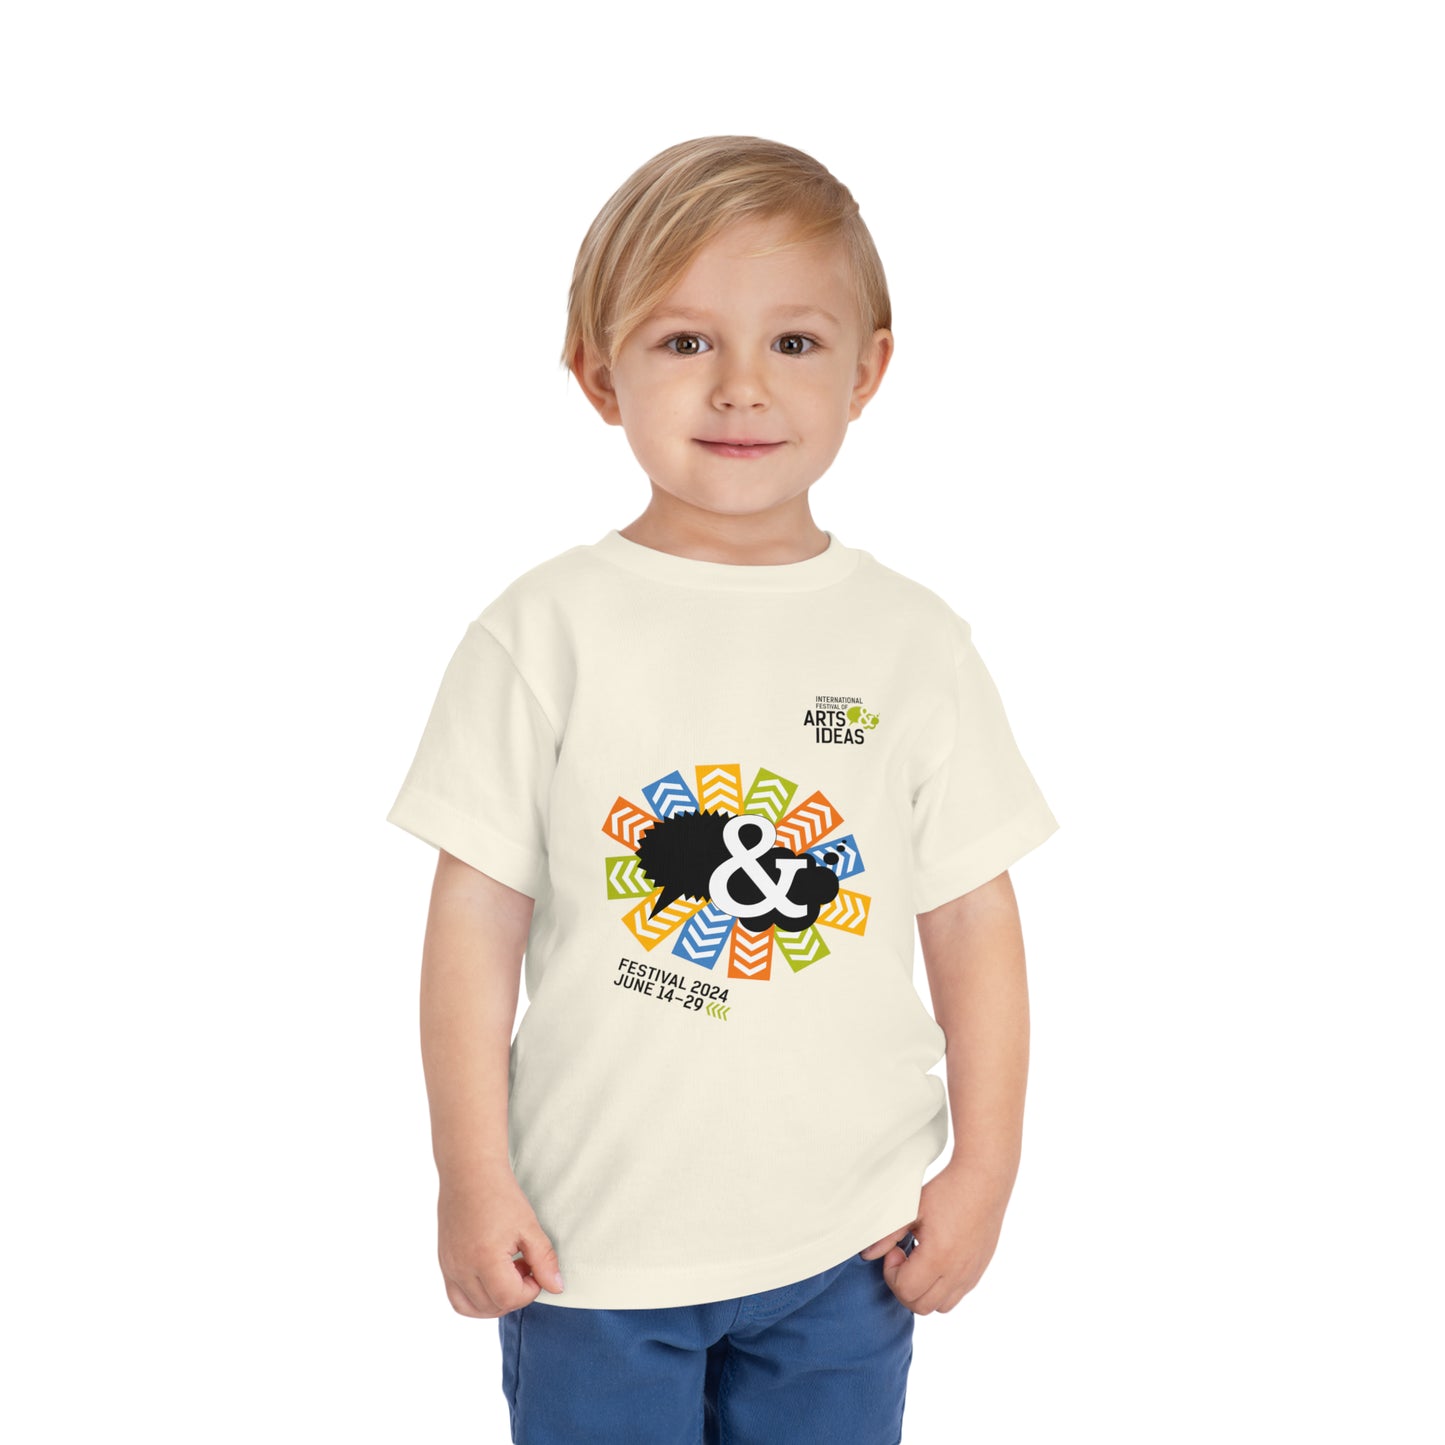 Festival 2024 Toddler T-Shirt